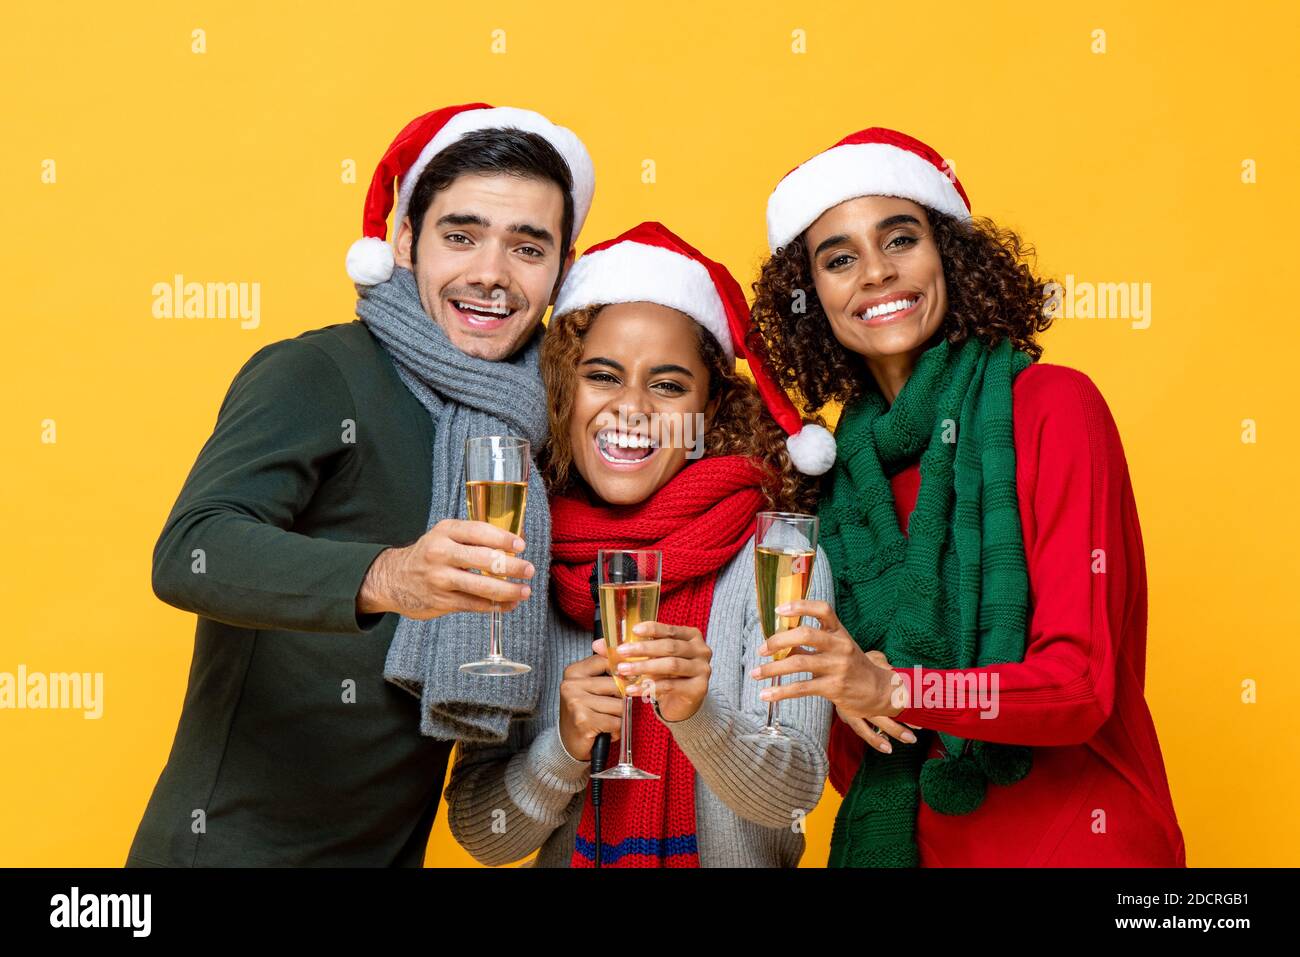 Glückliches Porträt von drei verschiedenen Freunden in Weihnachtskleidung klirren Champagner-Gläser feiern im Studio gelb isoliert Hintergrund Stockfoto